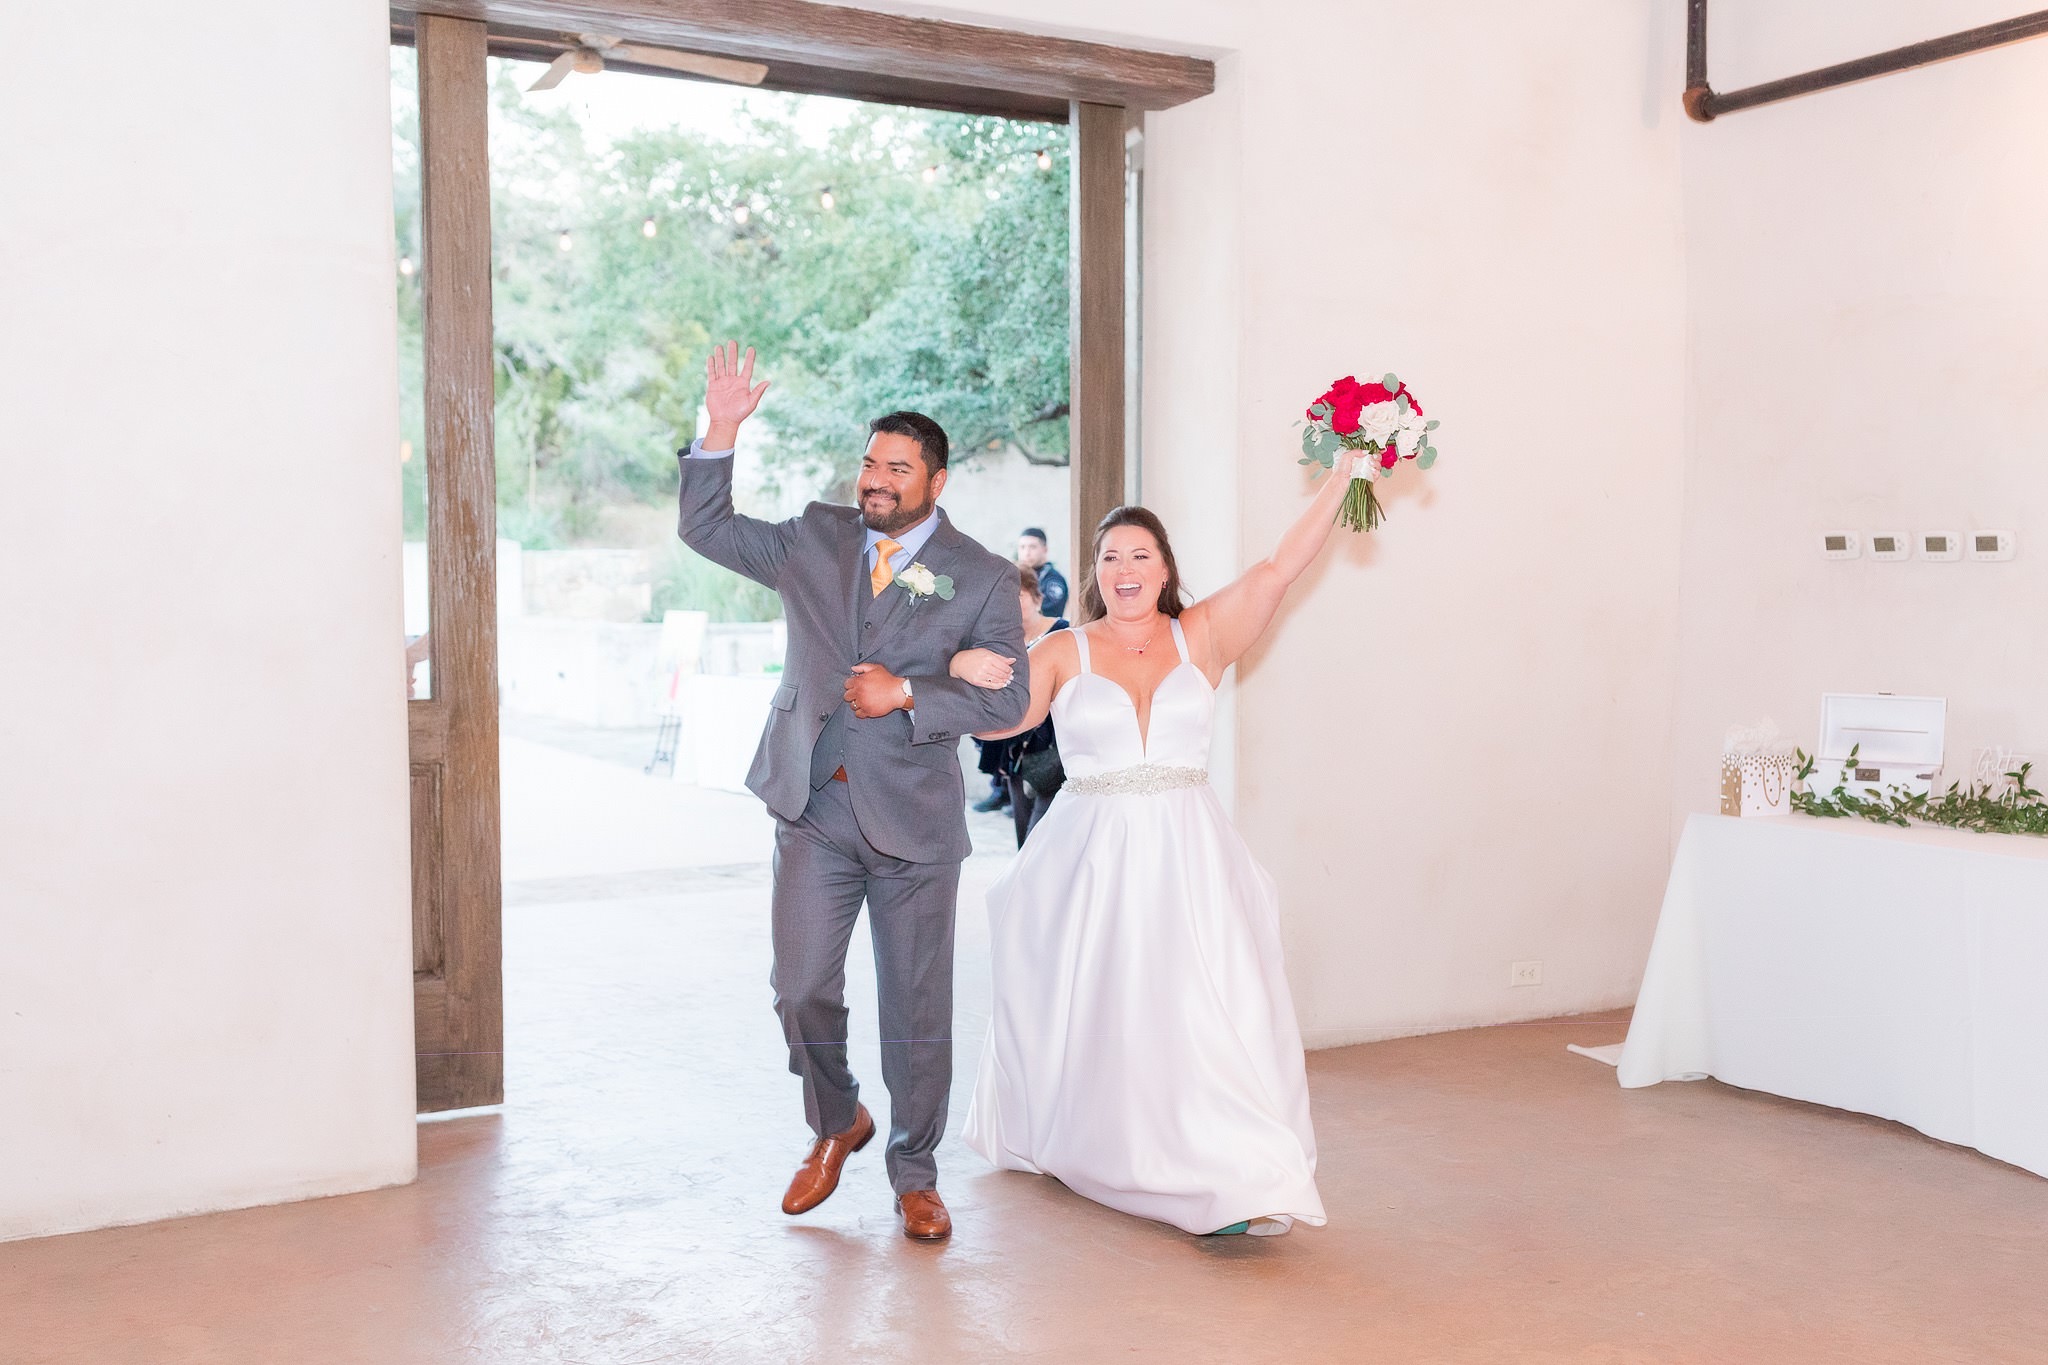 A Burgundy and Blush wedding at Lost Mission in Spring Branch, TX by Dawn Elizabeth Studios, San Antonio Wedding Photographer